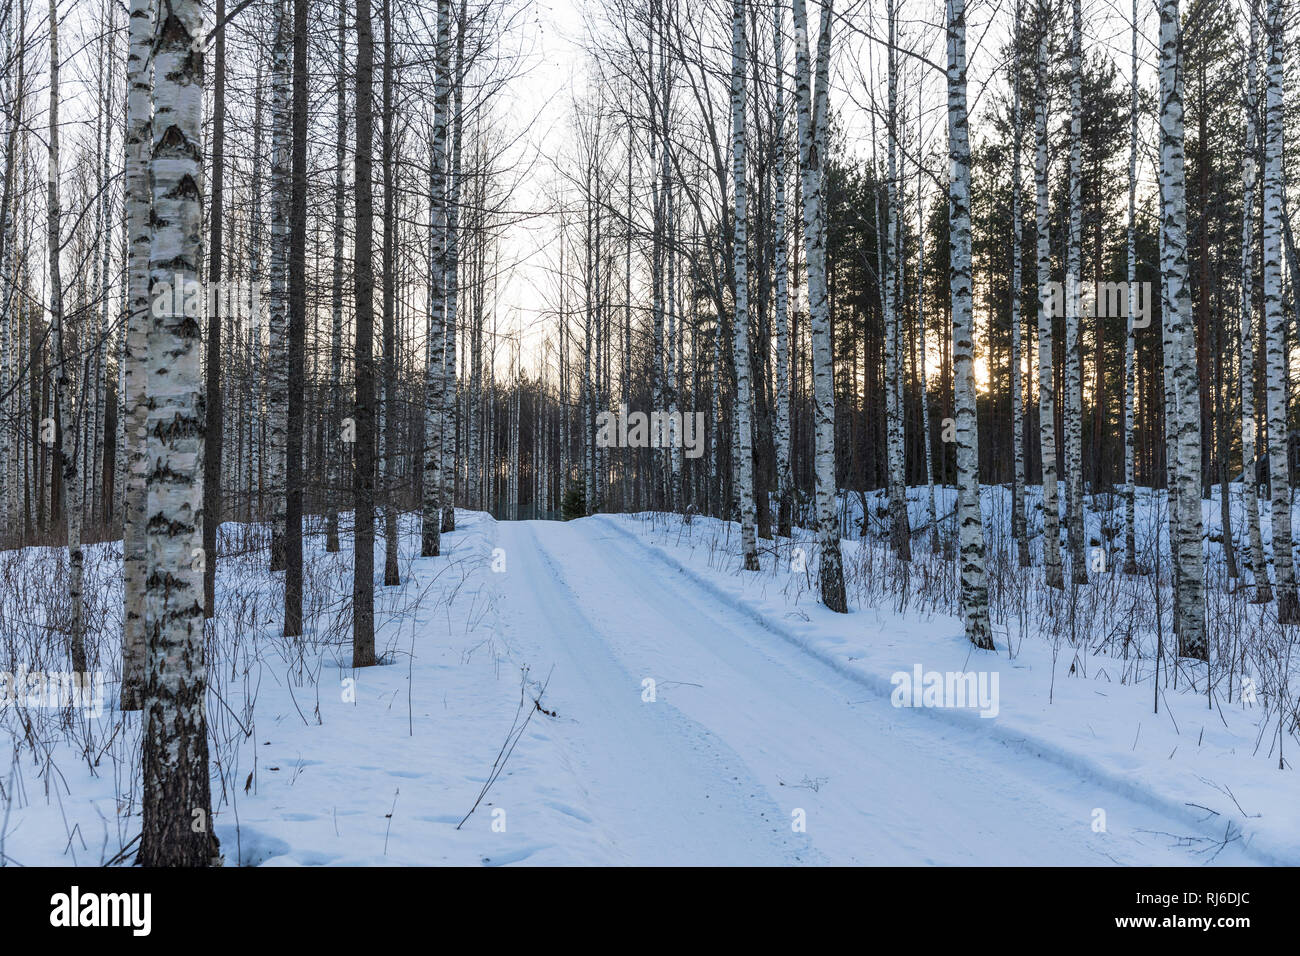 Finnland, Straße im Wald mit Birken im Winter Banque D'Images